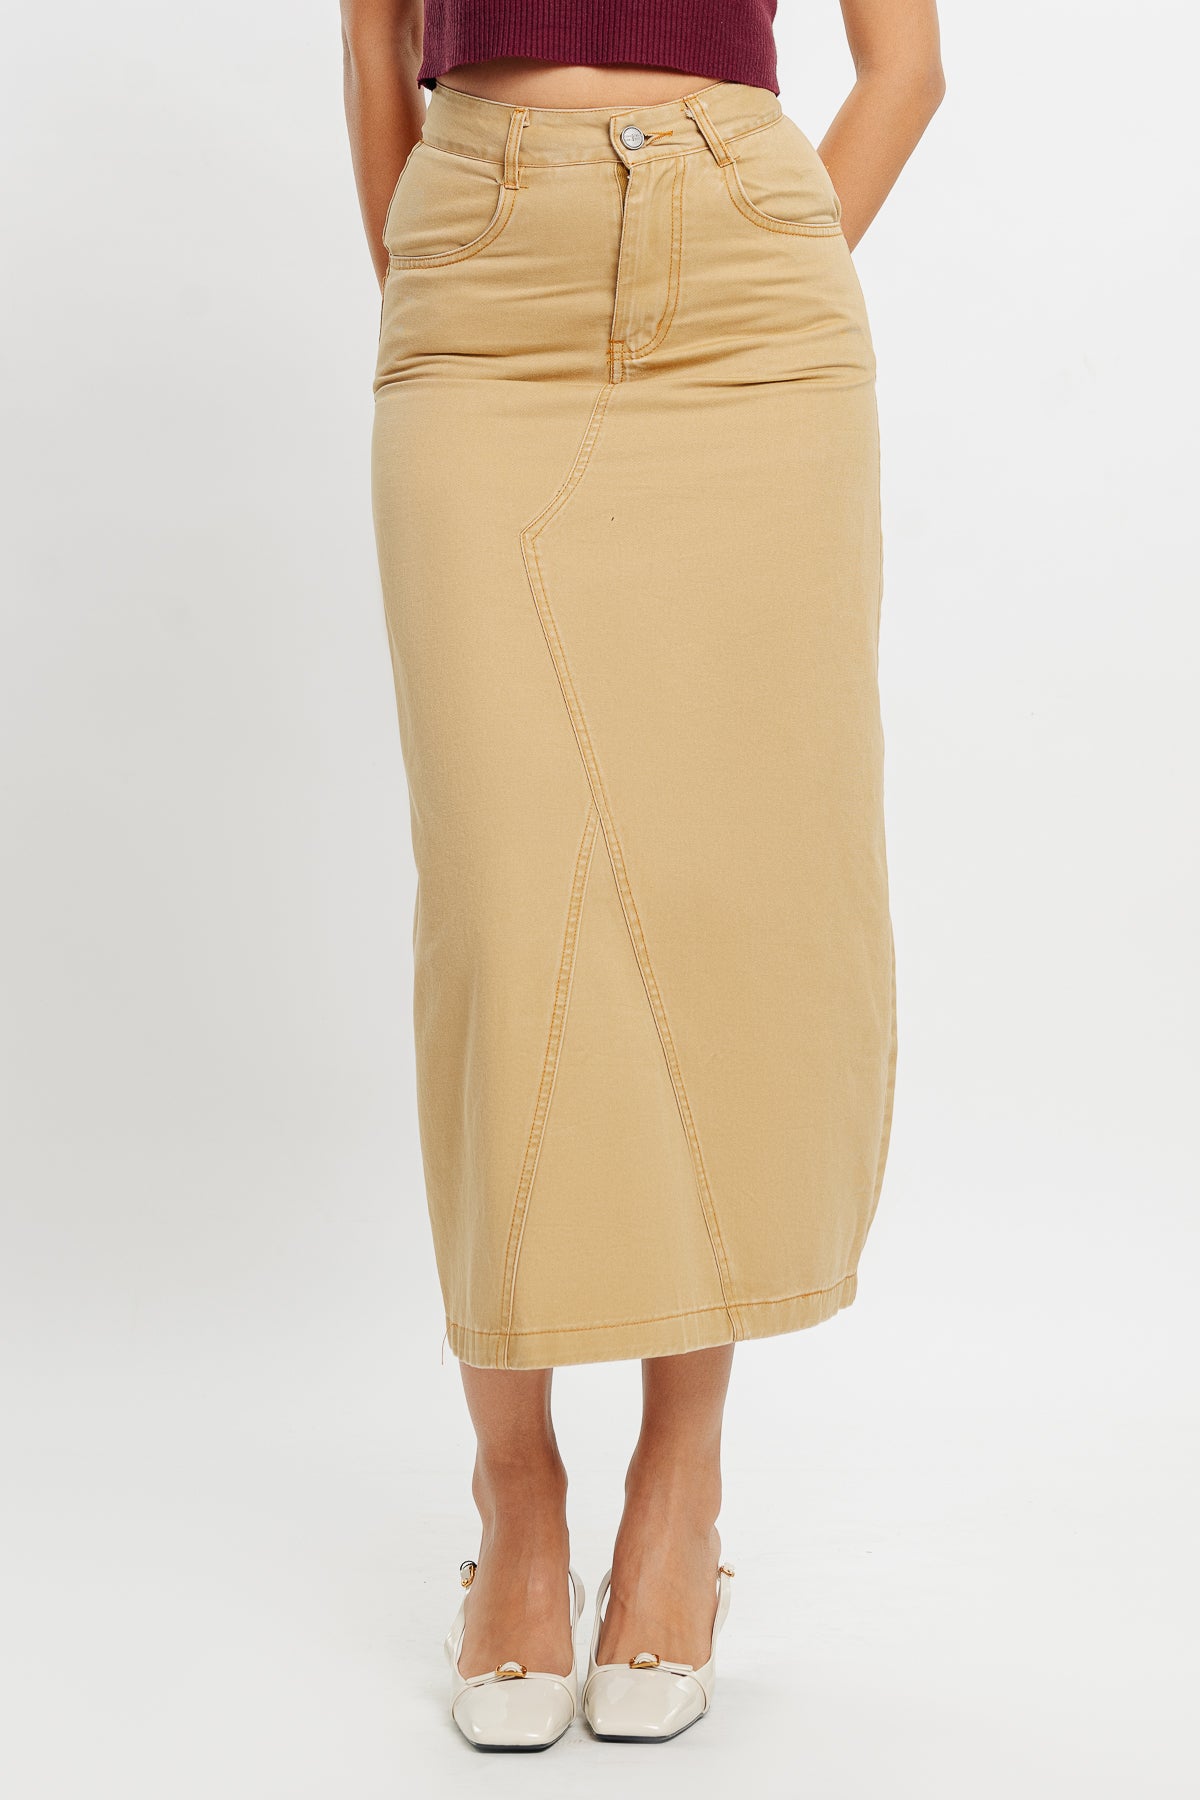 Denim Skirts, Jean Skirts For Women